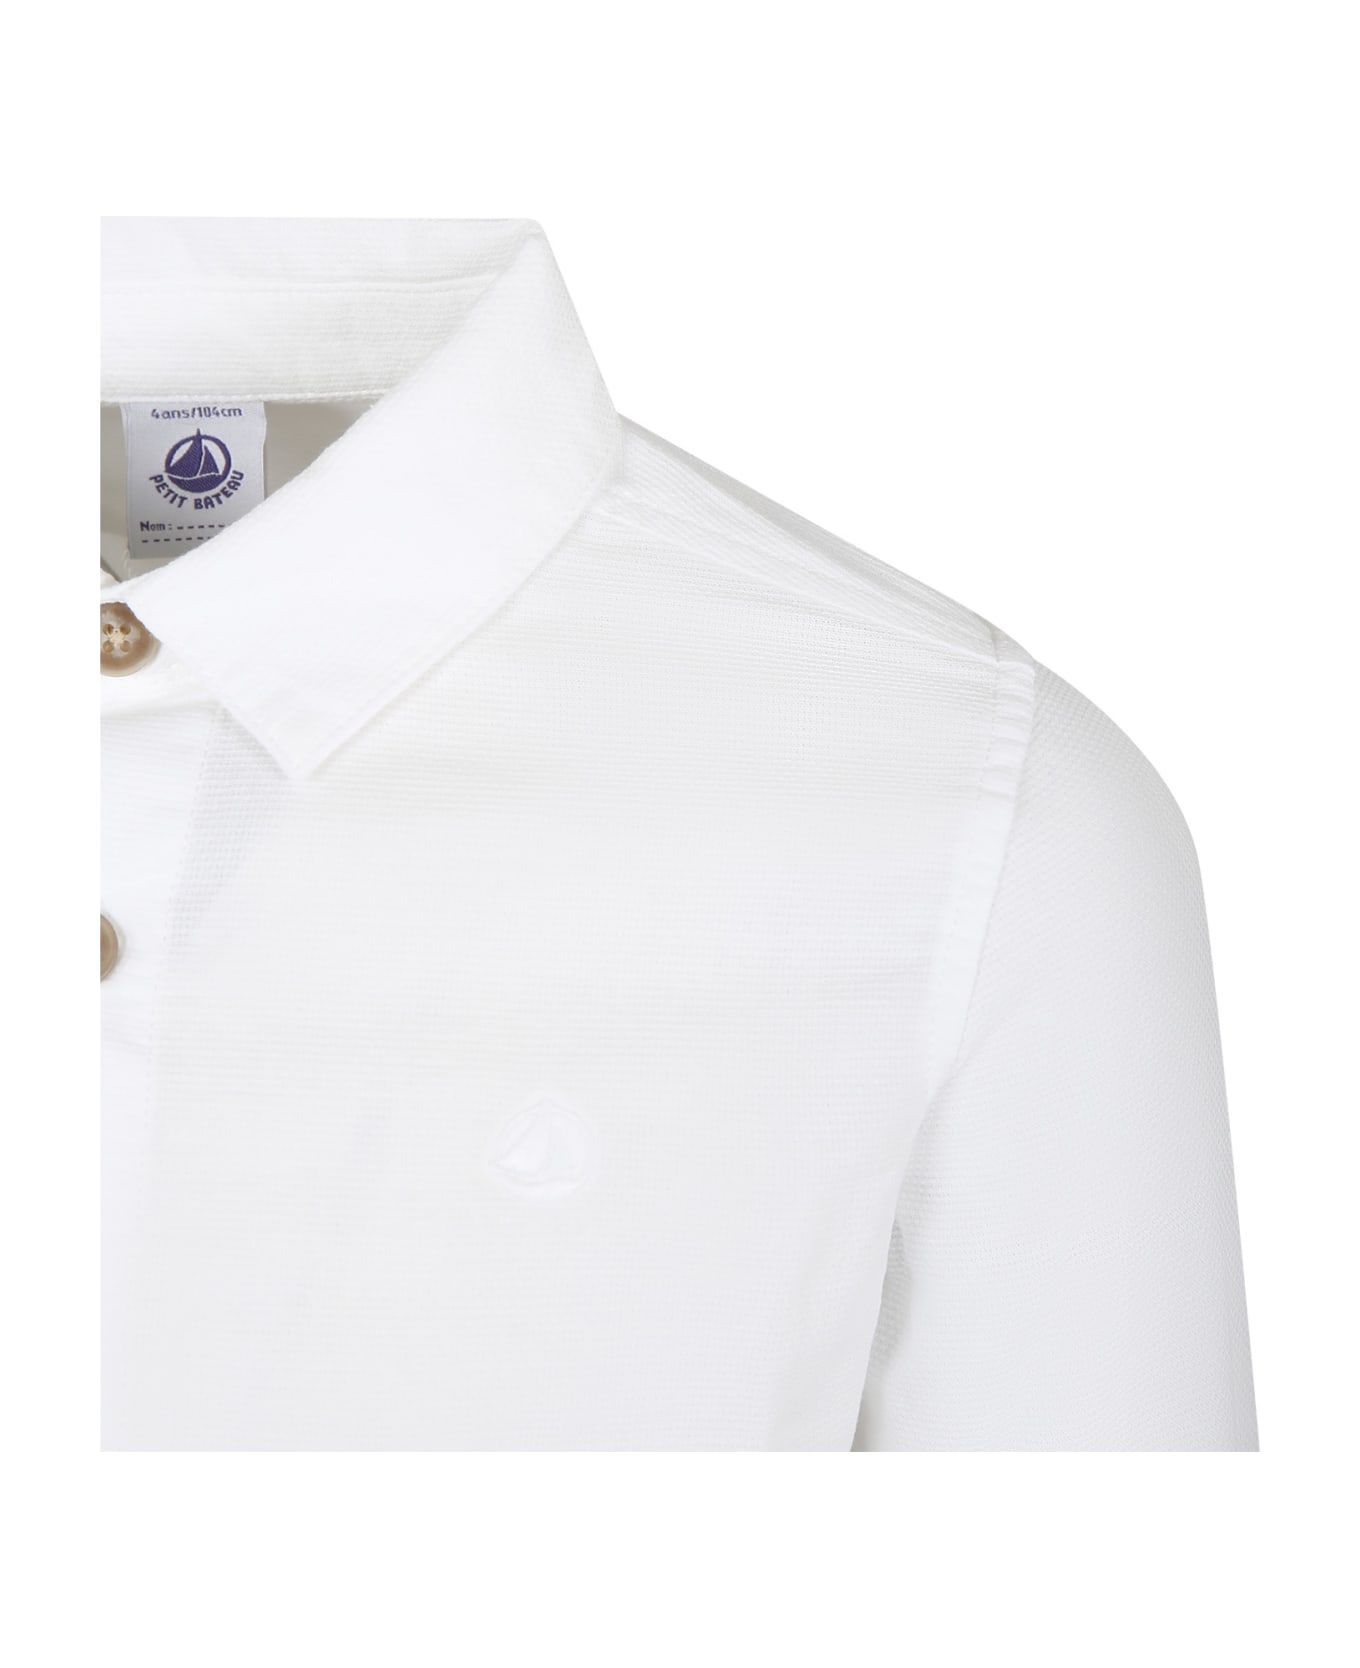 Petit Bateau White Shirt For Boy - White